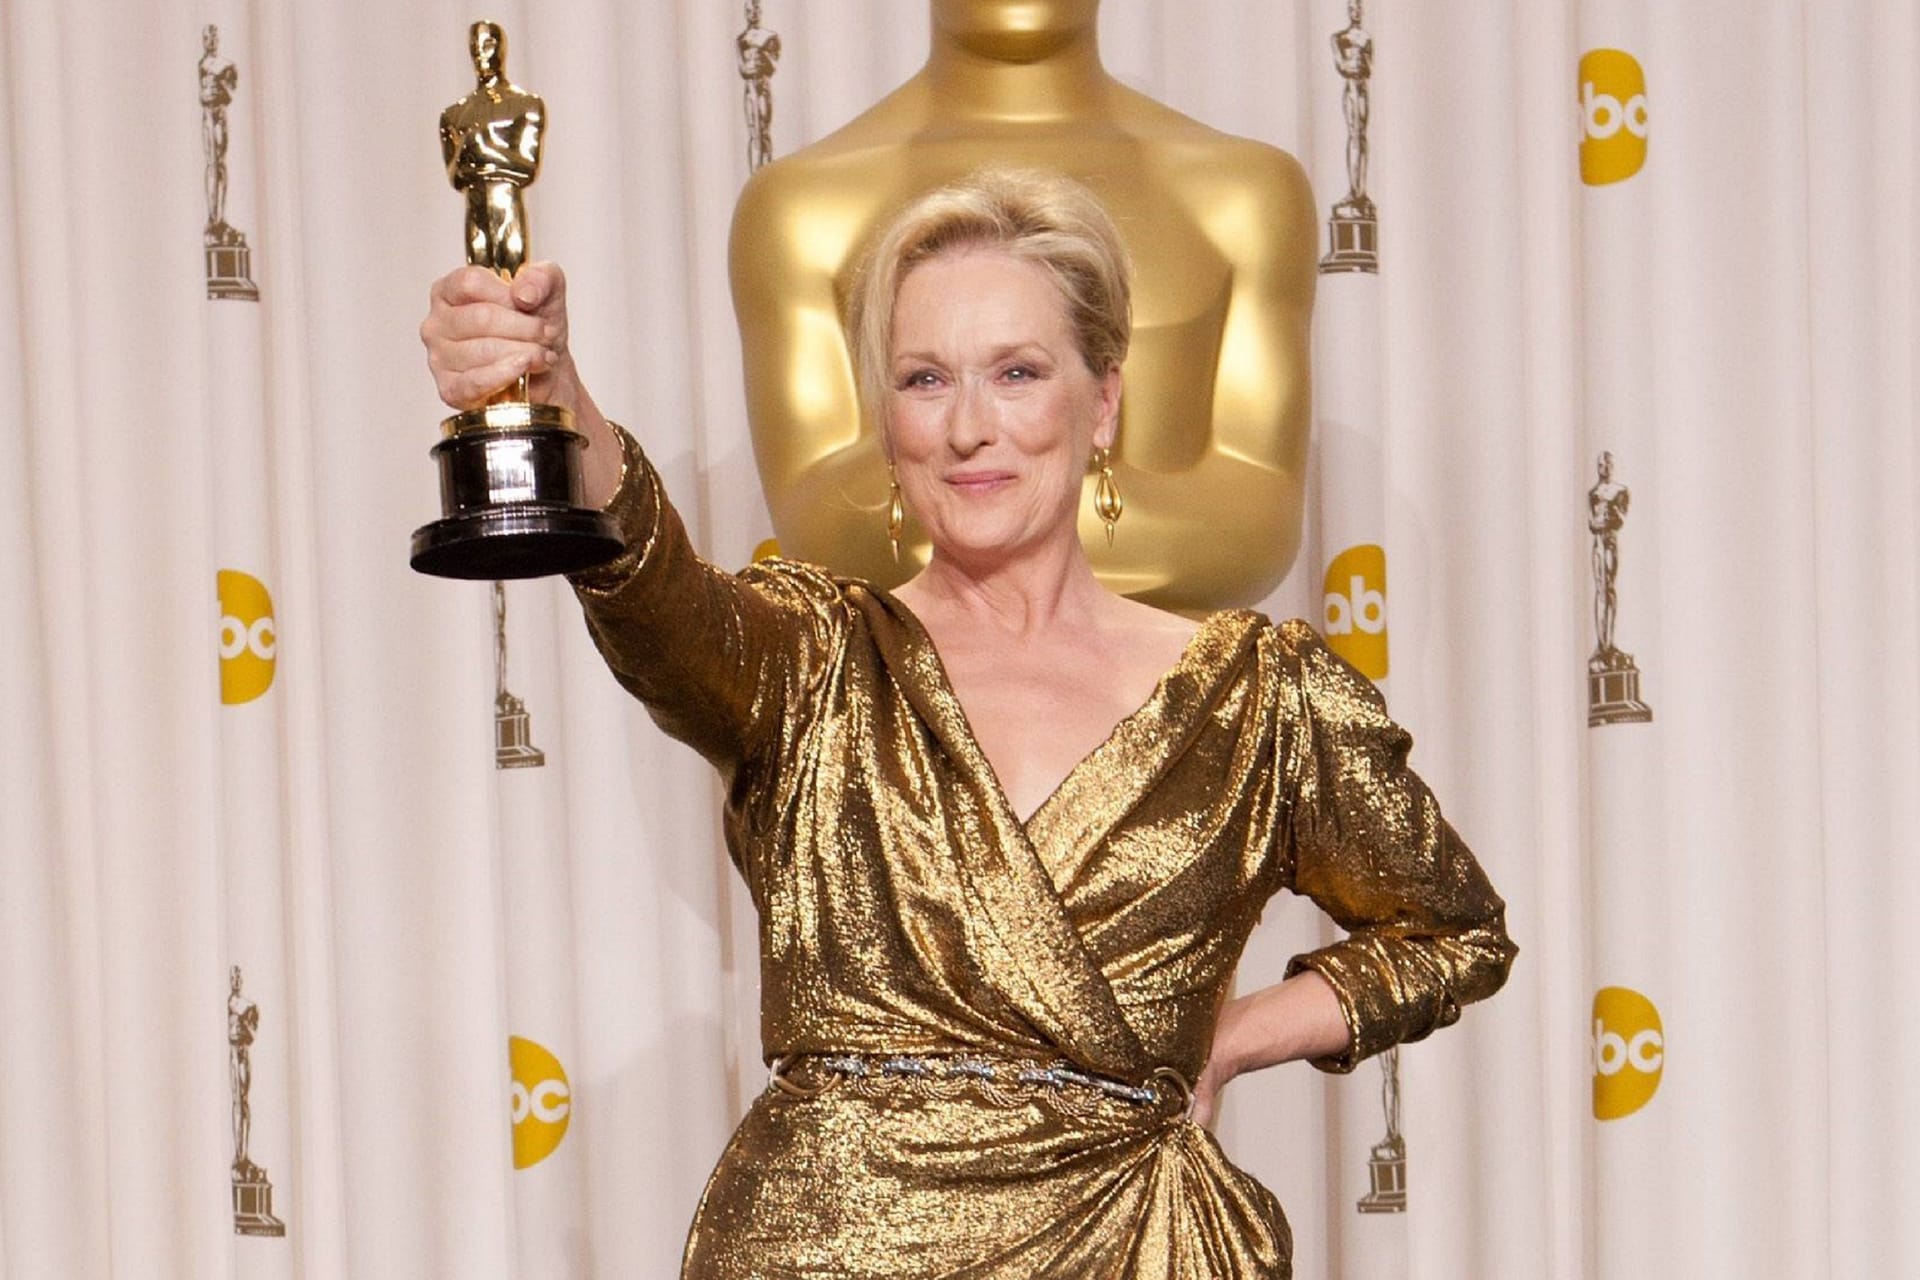 Meryl Streep: Die Filmikone ist die Königin der Nominierten. Ganze 21 Mal hatte sie bereits die Chance auf den Preis. Mit nach Hause nehmen konnte sie ihn bisher dreimal: "Kramer gegen Kramer" (1980), "Sophies Entscheidung" (1983) und "Die Eiserne Lady" (2012).